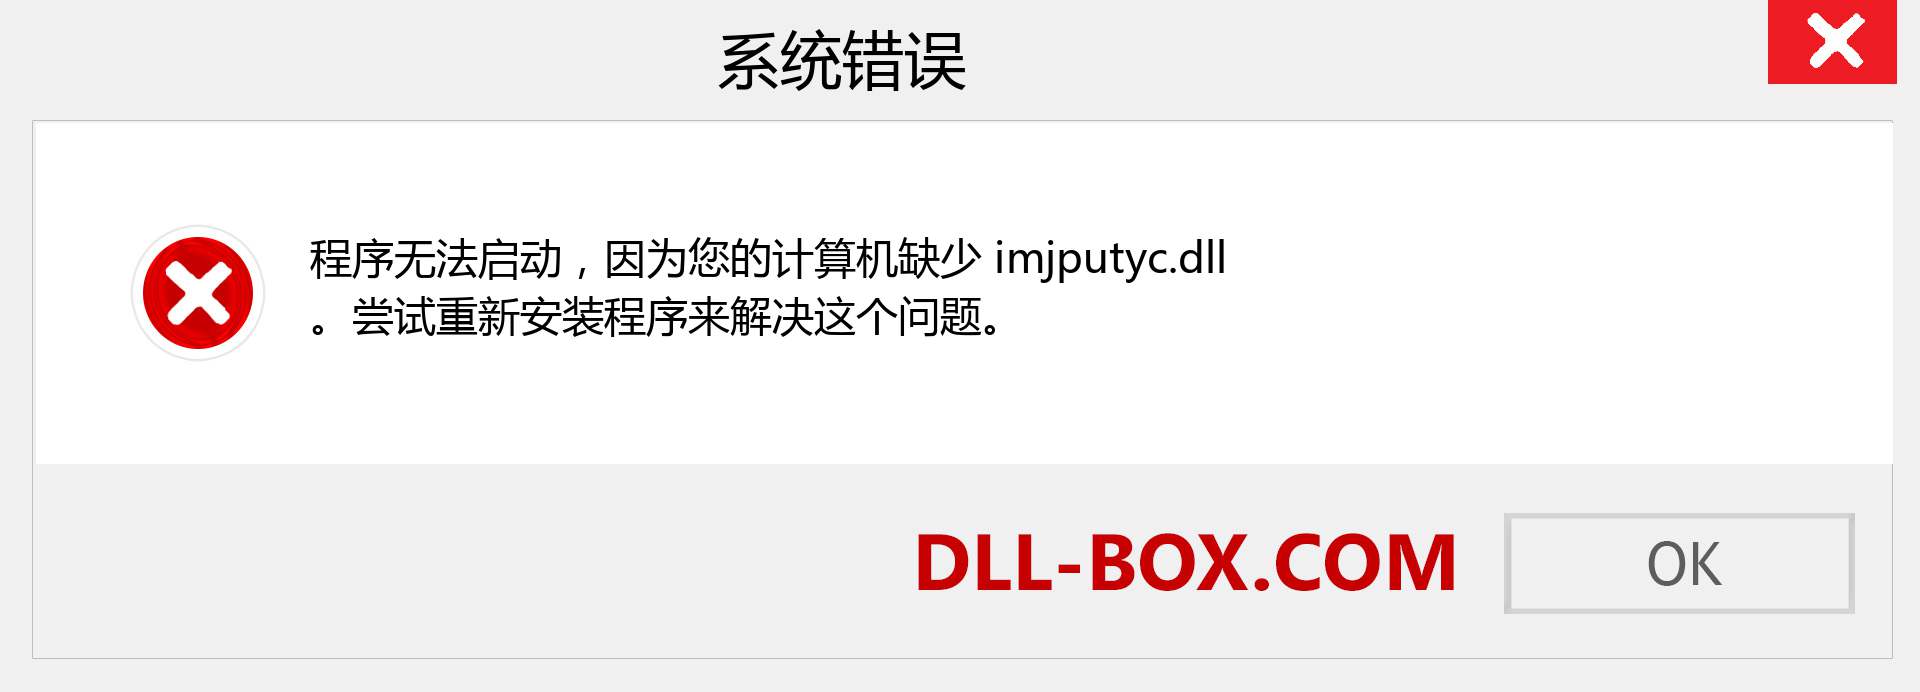 imjputyc.dll 文件丢失？。 适用于 Windows 7、8、10 的下载 - 修复 Windows、照片、图像上的 imjputyc dll 丢失错误